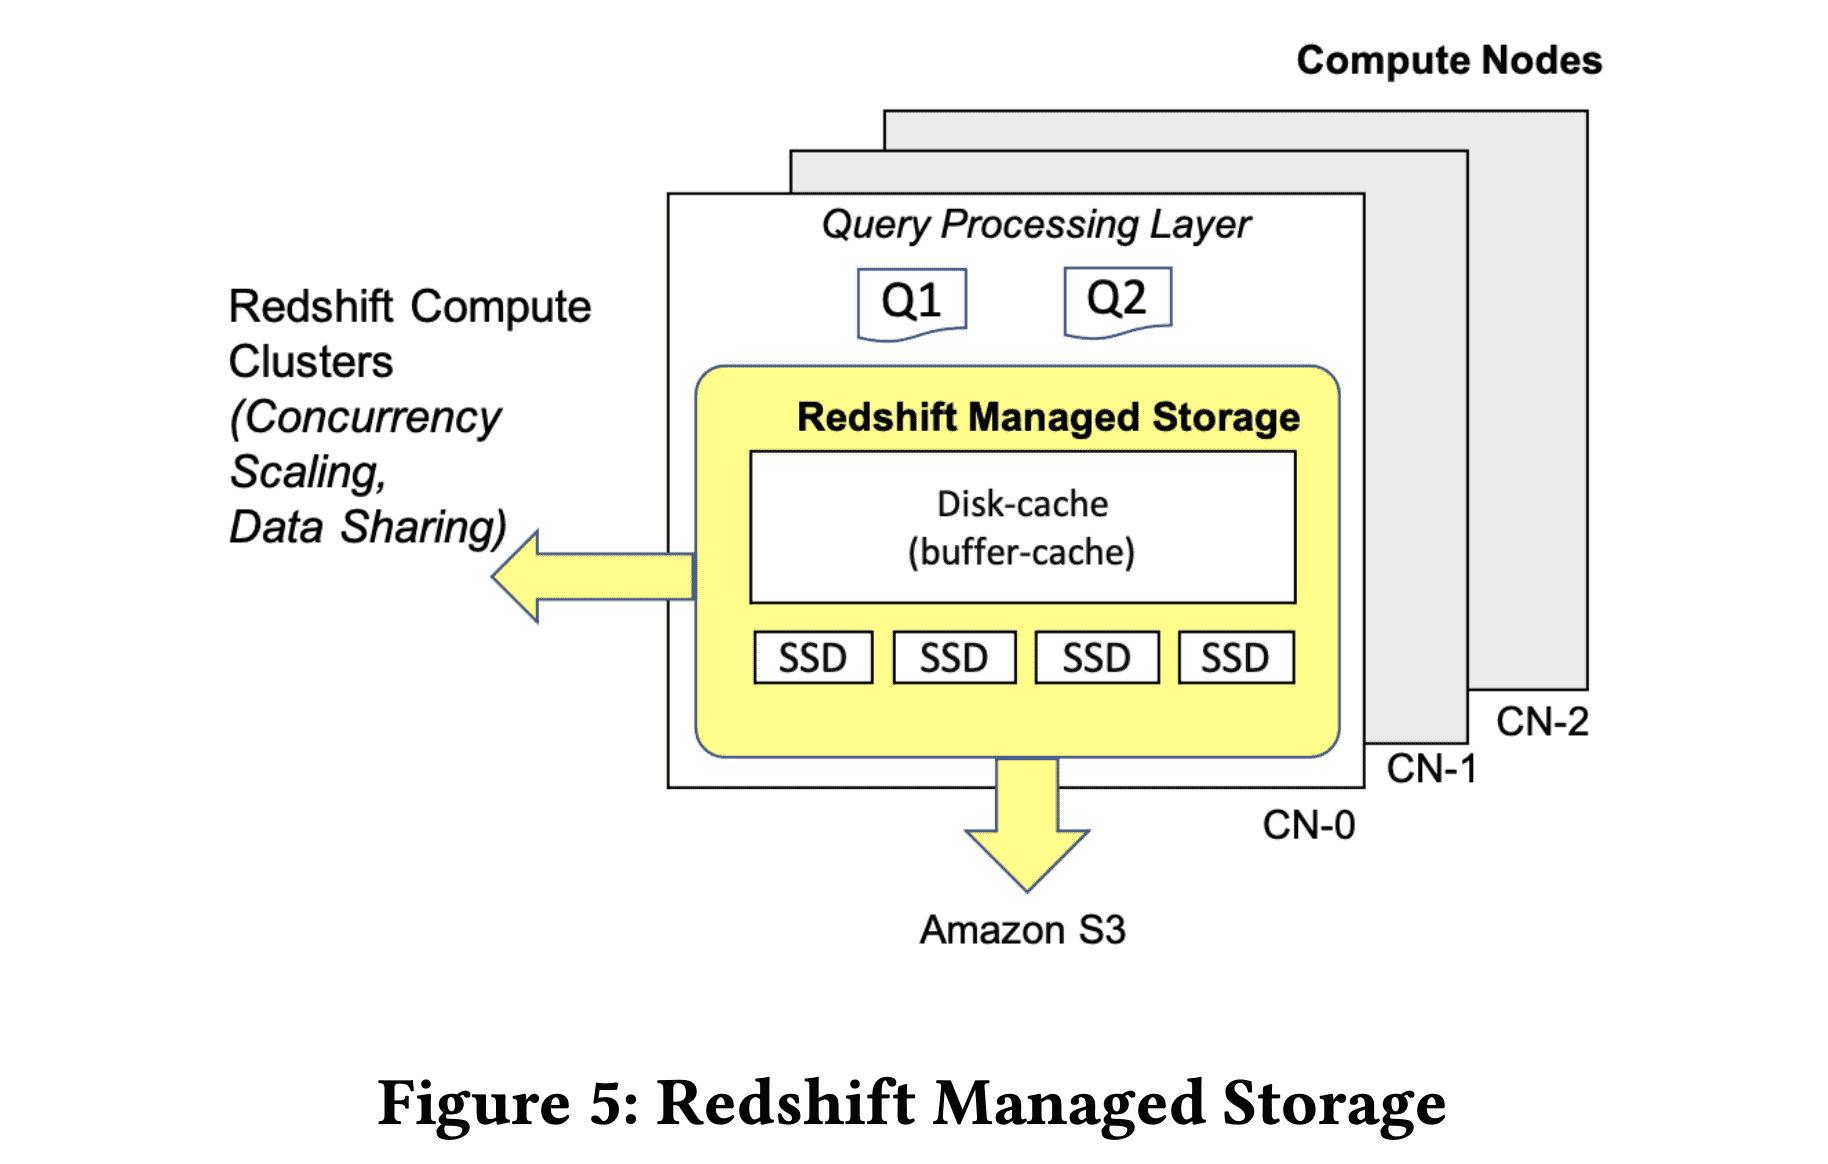 Redshift Managed Storage